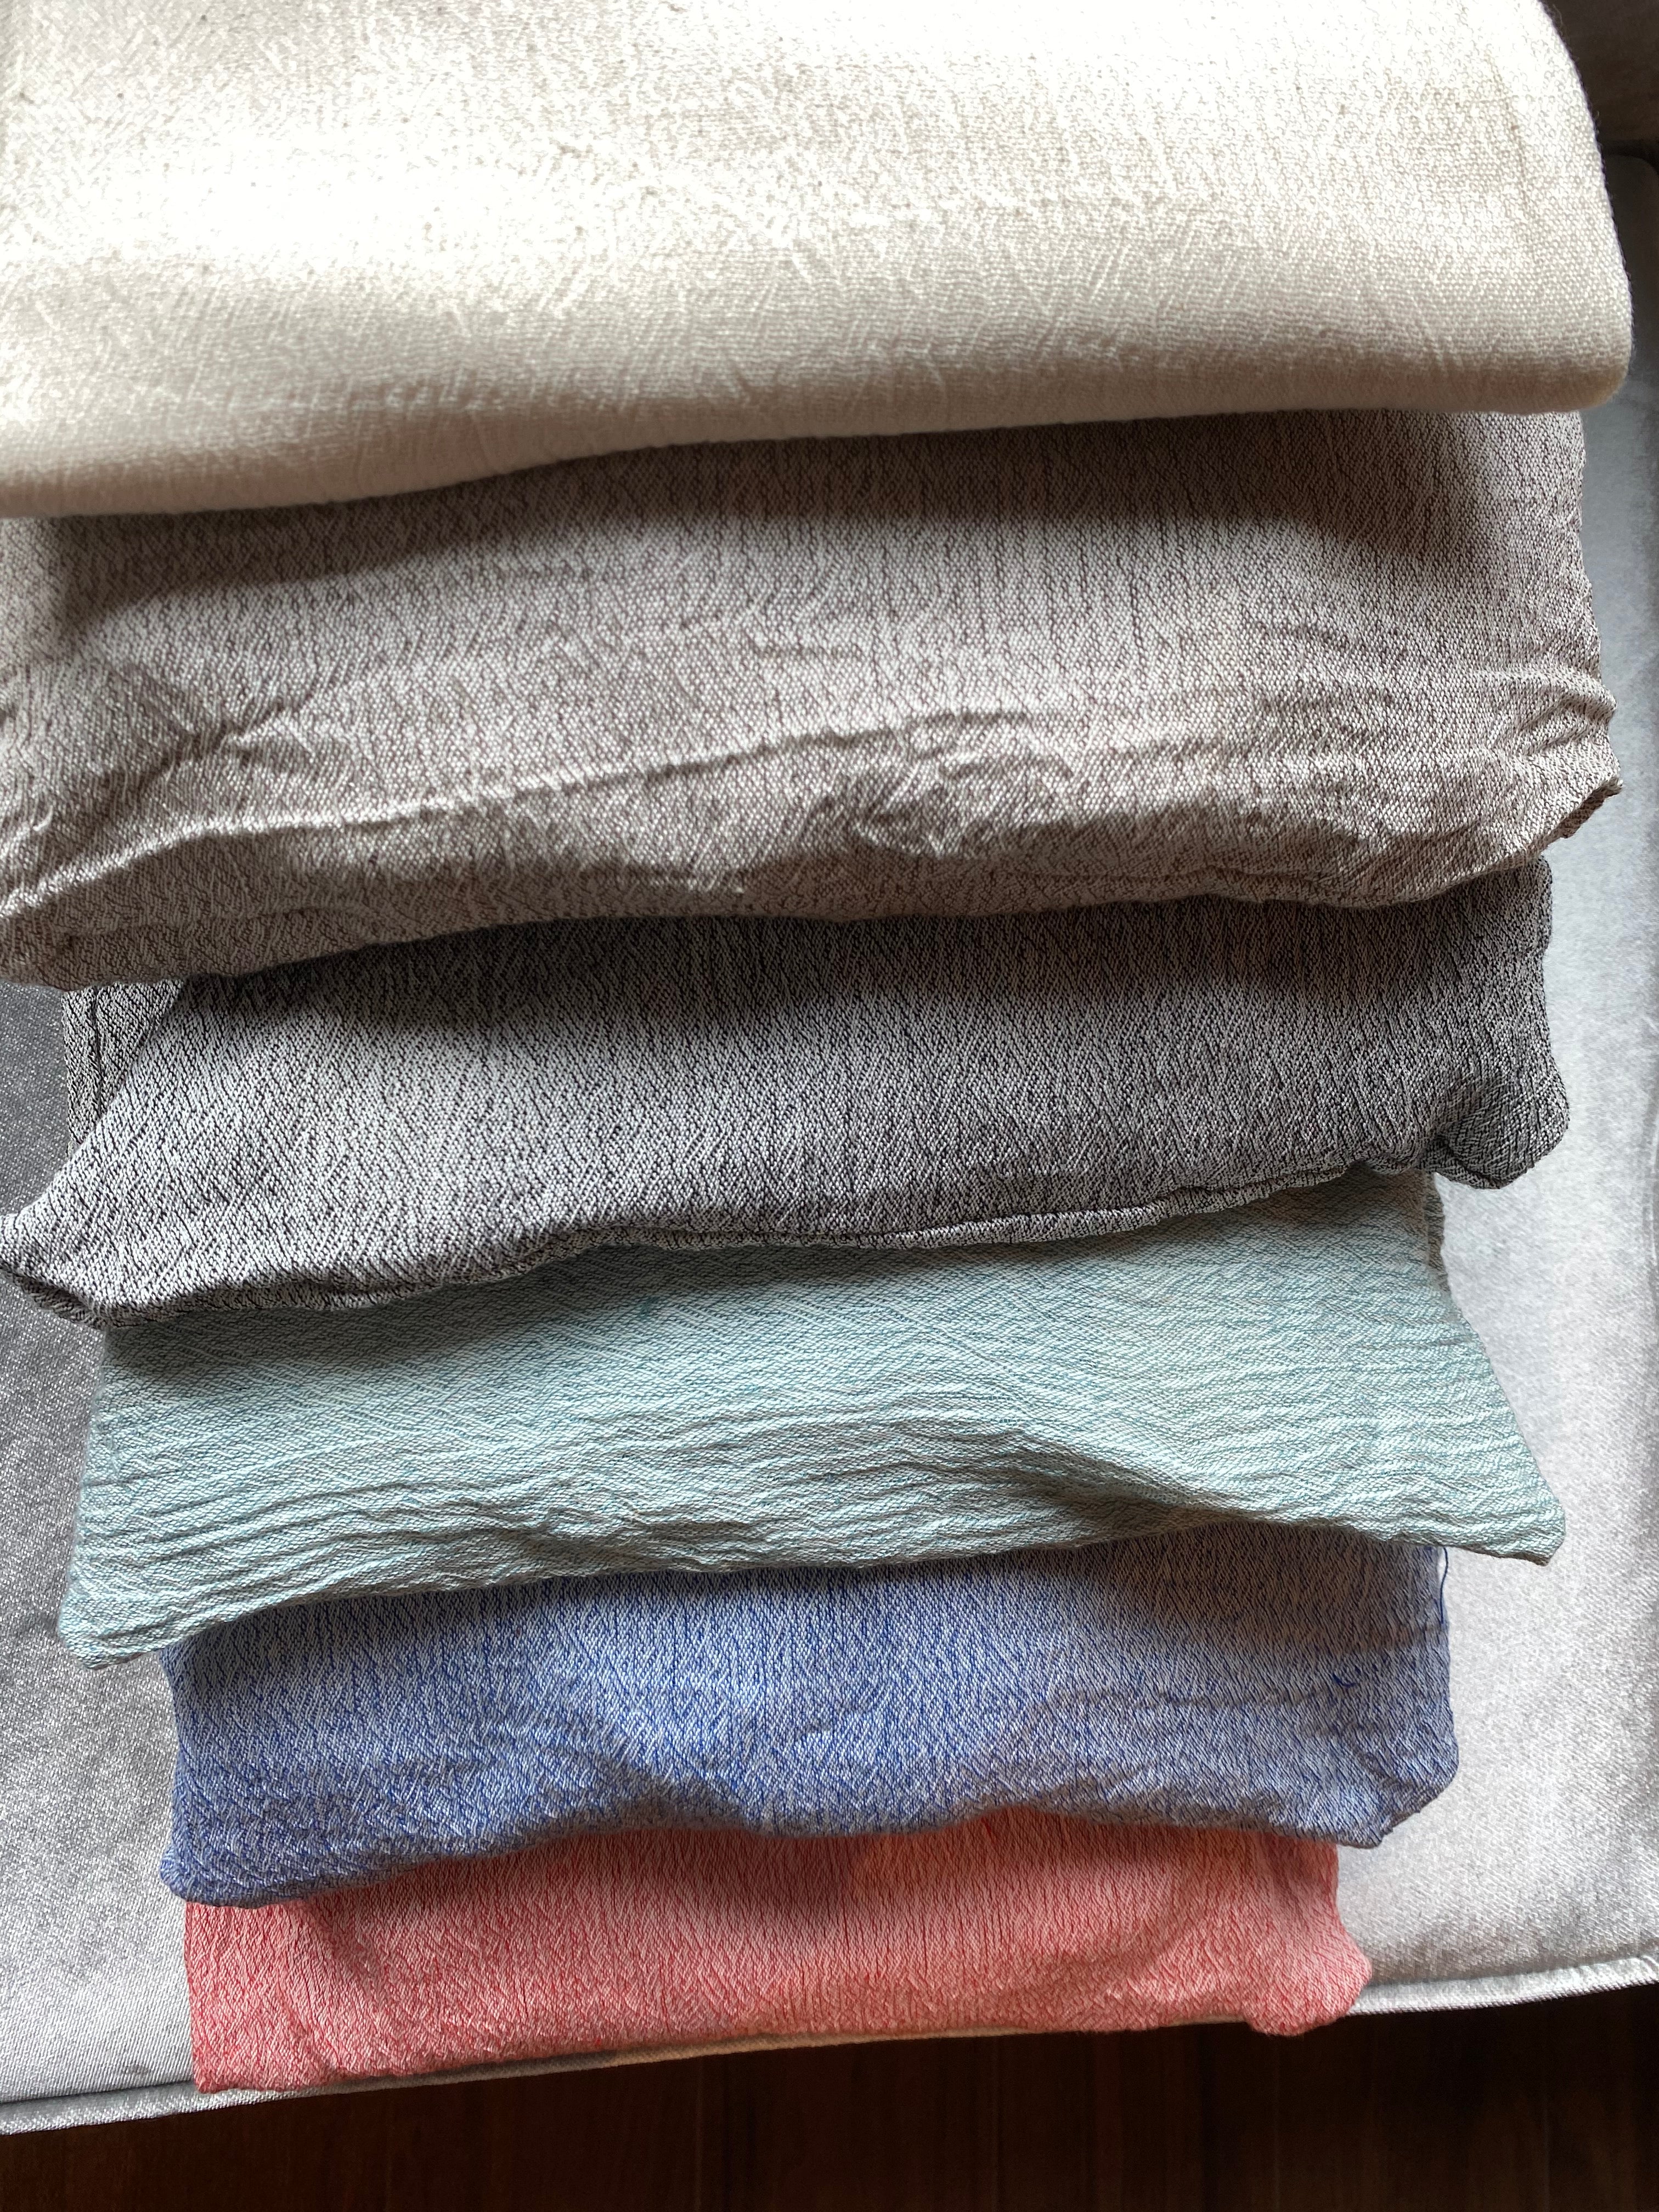 100% Cotton Sile Cloth 8 Piece Duvet Cover Set